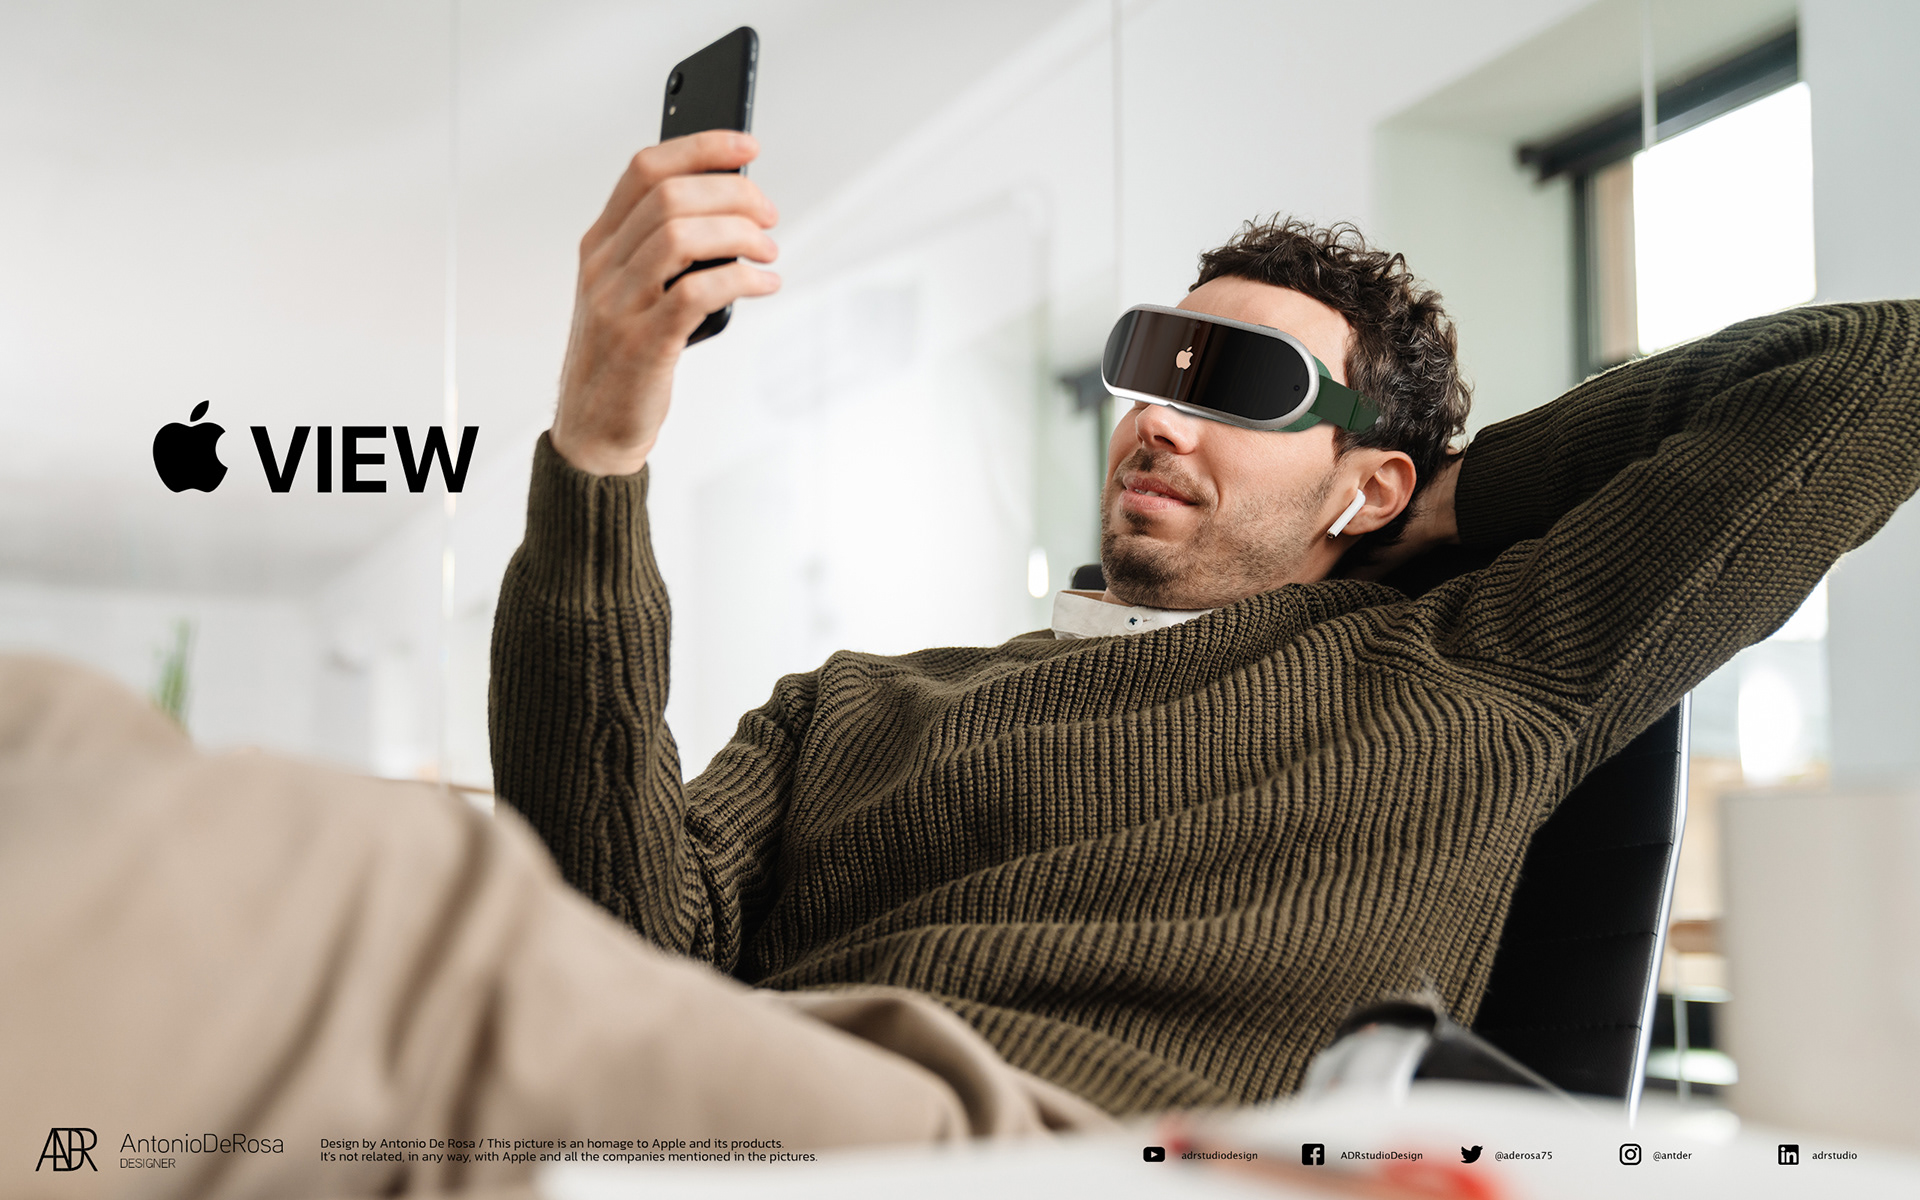 蘋果AR/VR頭戴眼鏡概念設計欣賞！混合虛擬現實 | Apple News, Apple View, 蘋果概念設計 | iPhone News 愛瘋了